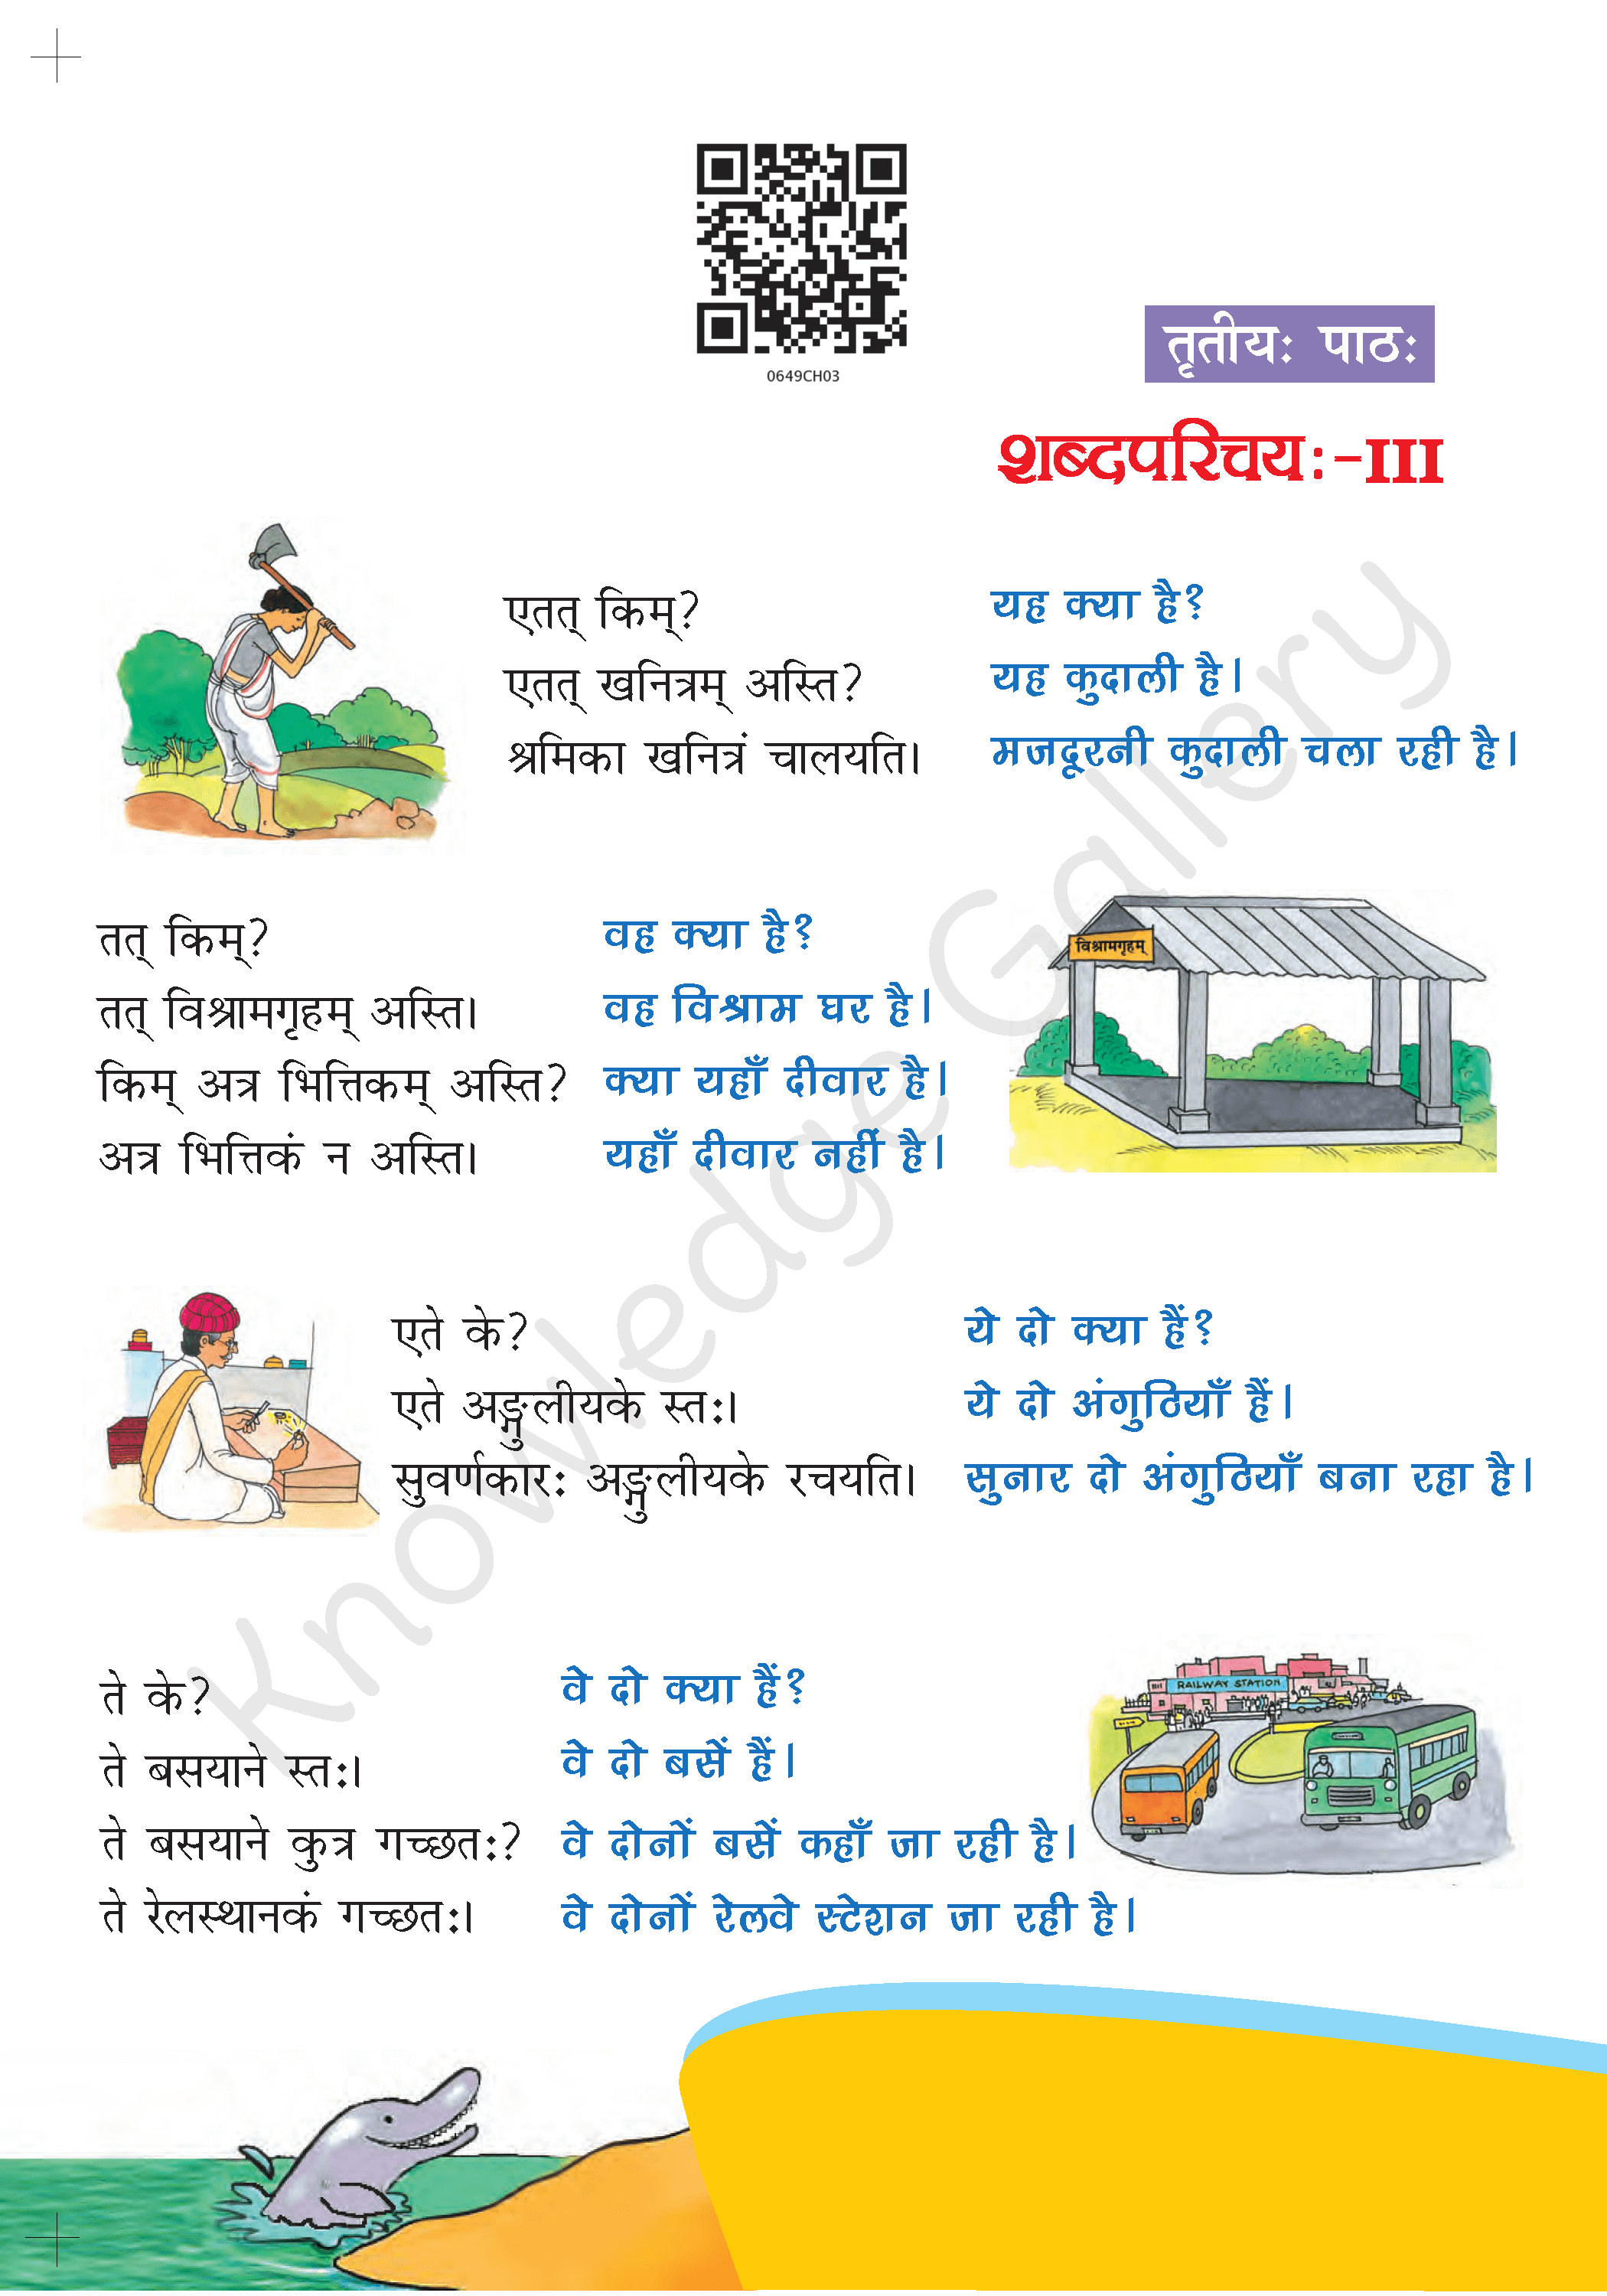 NCERT Solution For Class 6 Sanskrit Chapter 3 part 1